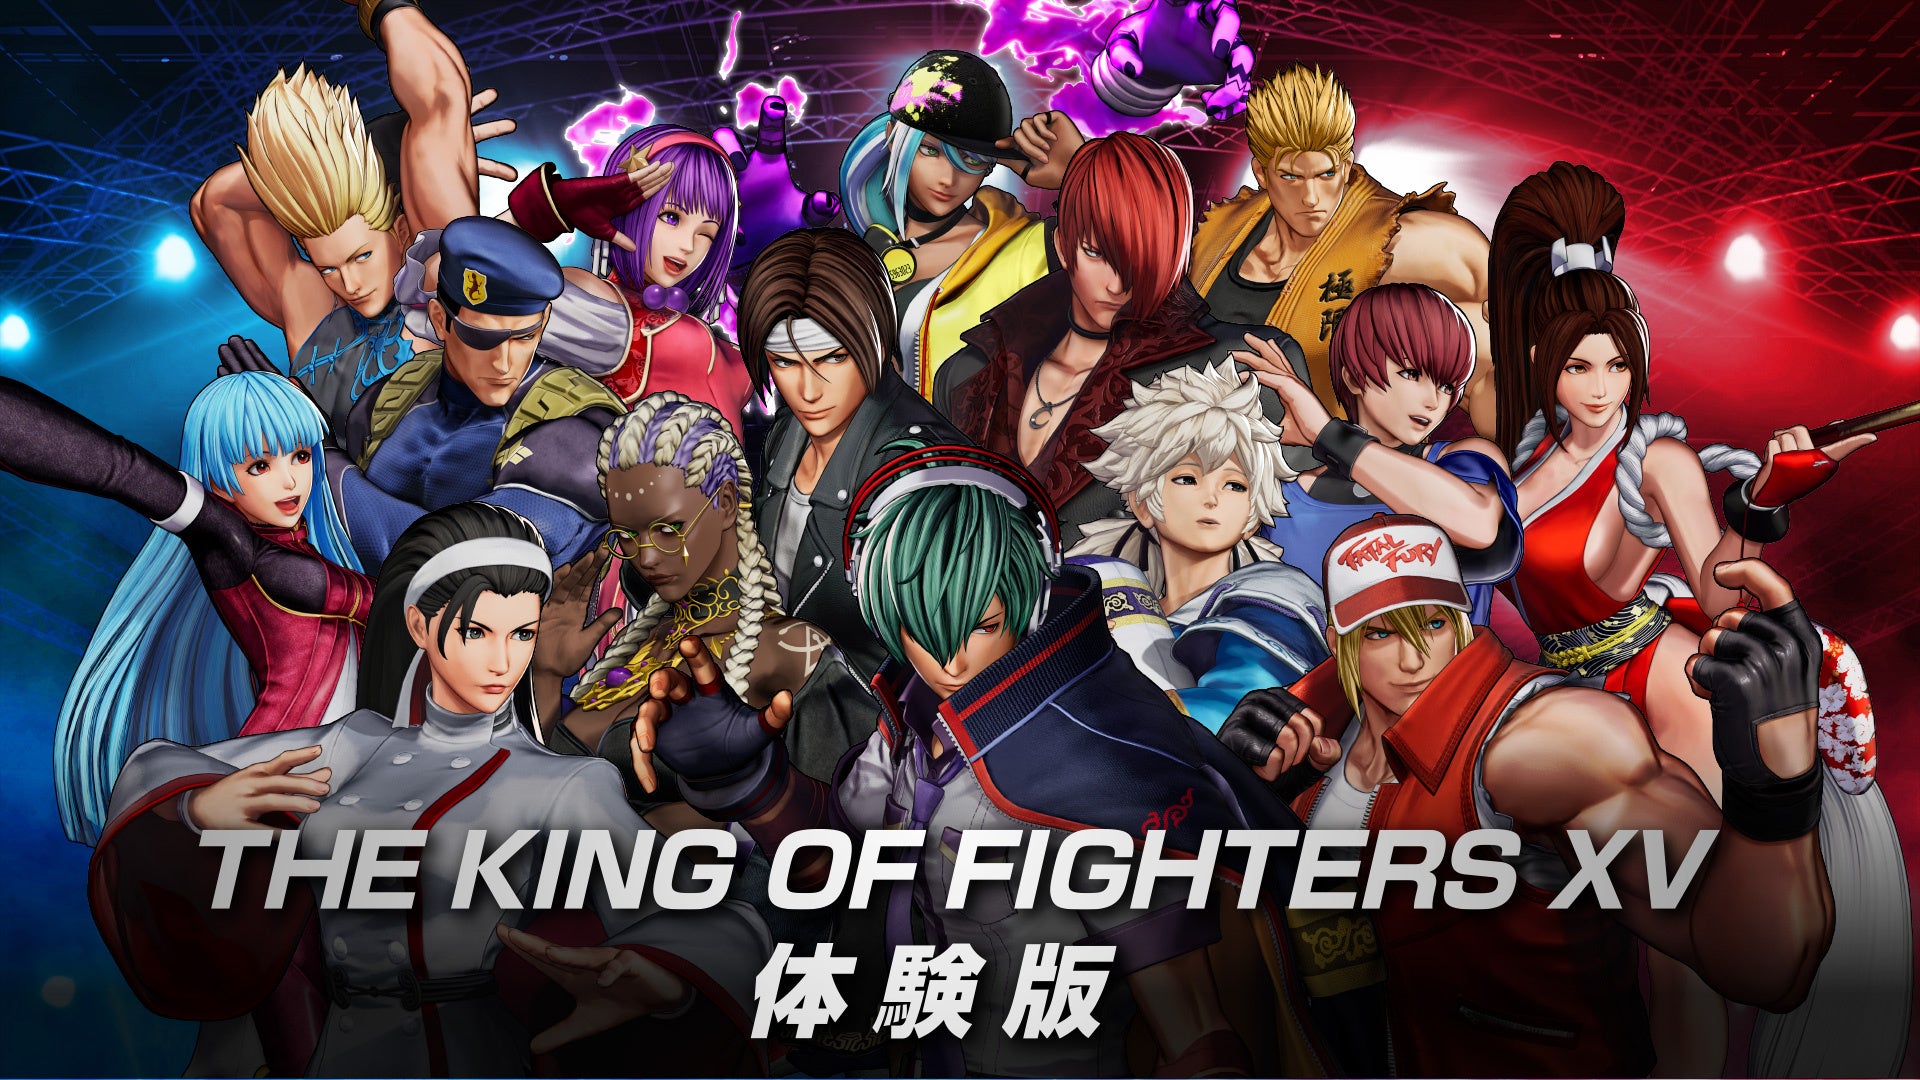 対戦格闘ゲーム『THE KING OF FIGHTERS XV』、15キャラクターが使用できる体験版を配信開始！